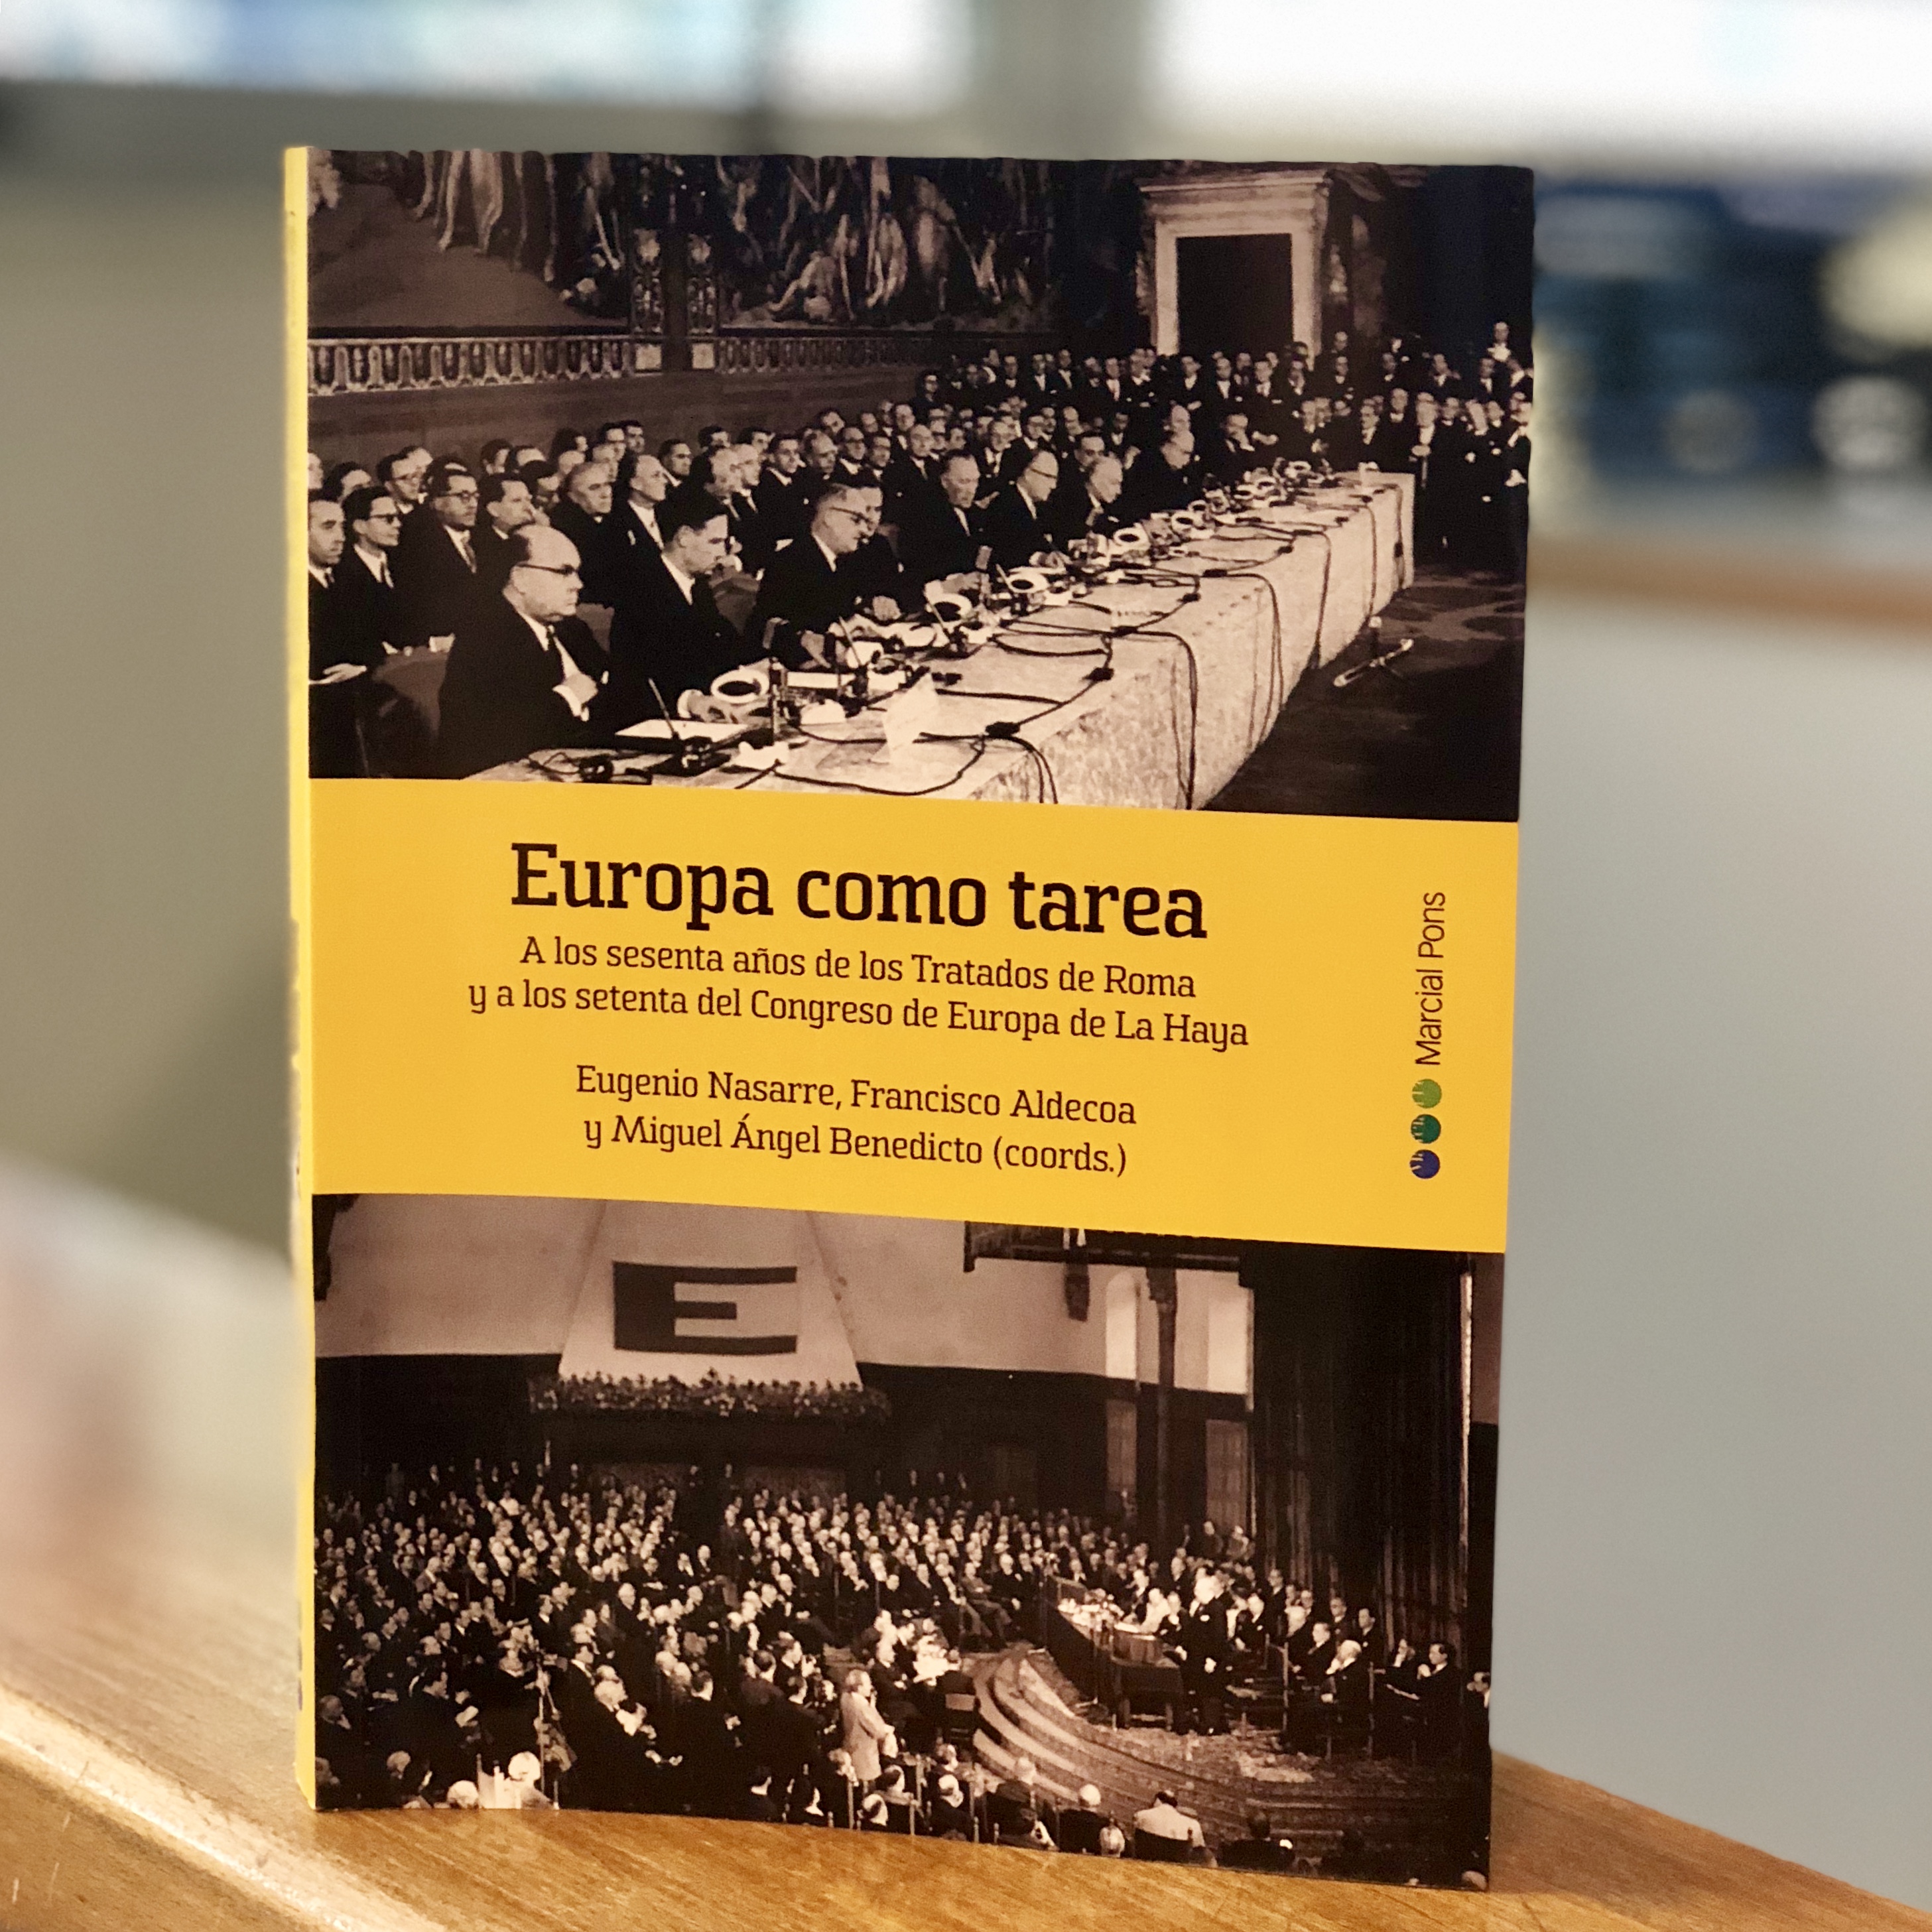 Debat: EUROPA, FITES I PROPOSTES, amb motiu de la presentació del llibre "Europa como tarea"